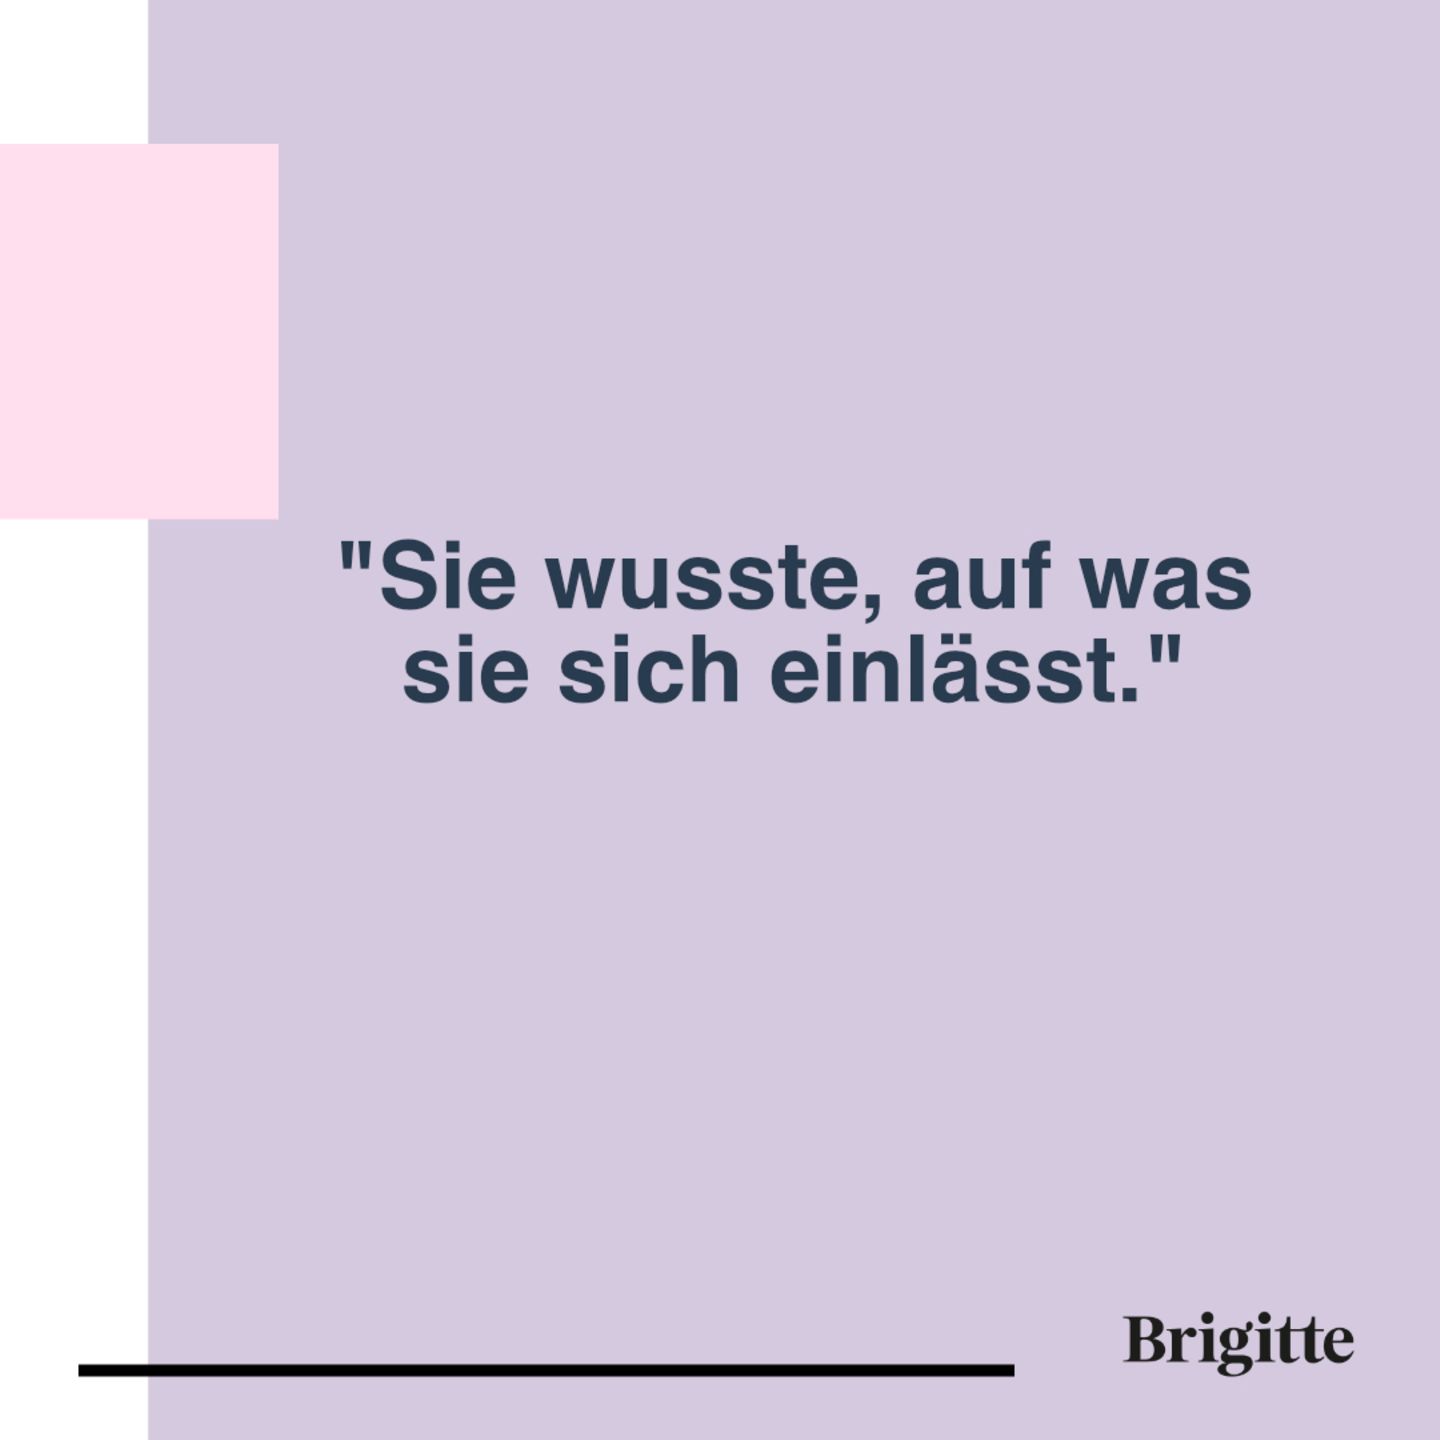 Diese sexistischen Sätze haben wir alle verinnerlicht | BRIGITTE.de